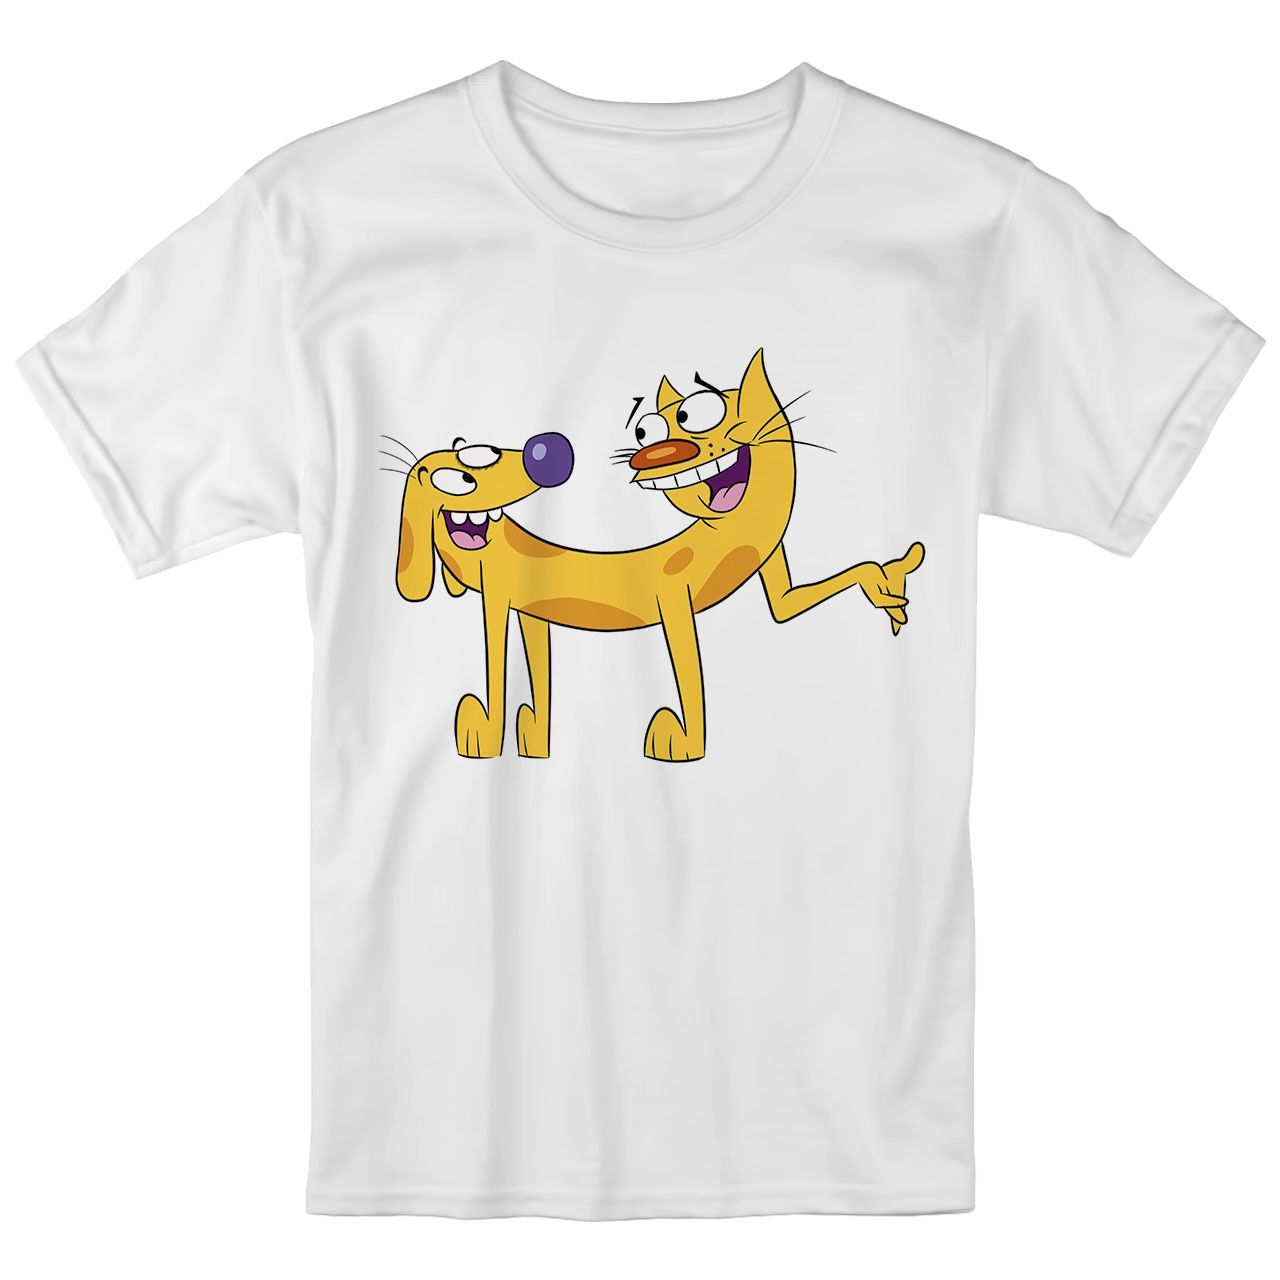 تی شرت بچگانه انارچاپ طرح گربه سگ مدل T09020